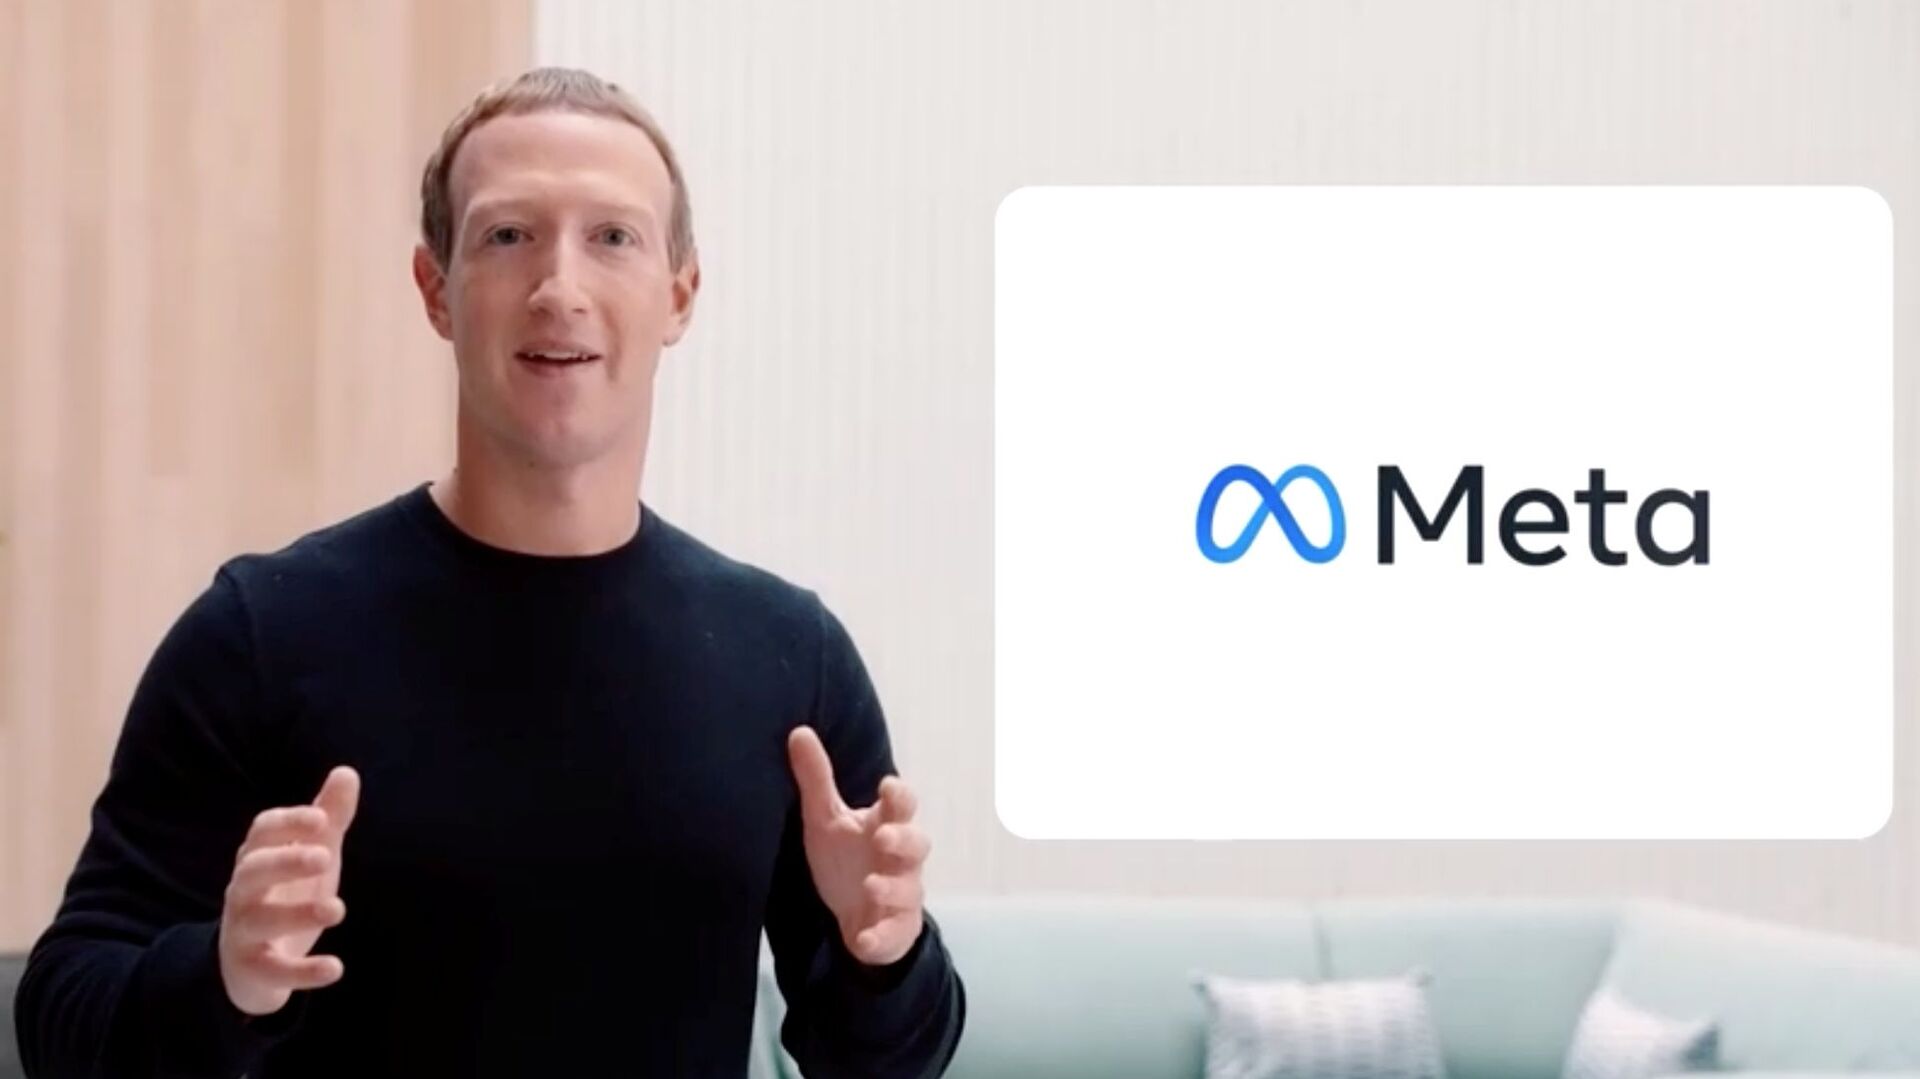 مؤسس شركة فيسبوك مارك زوكربيرغ يغير اسمها إلى ميتا، 28 أكتوبر 2021 - سبوتنيك عربي, 1920, 15.01.2022